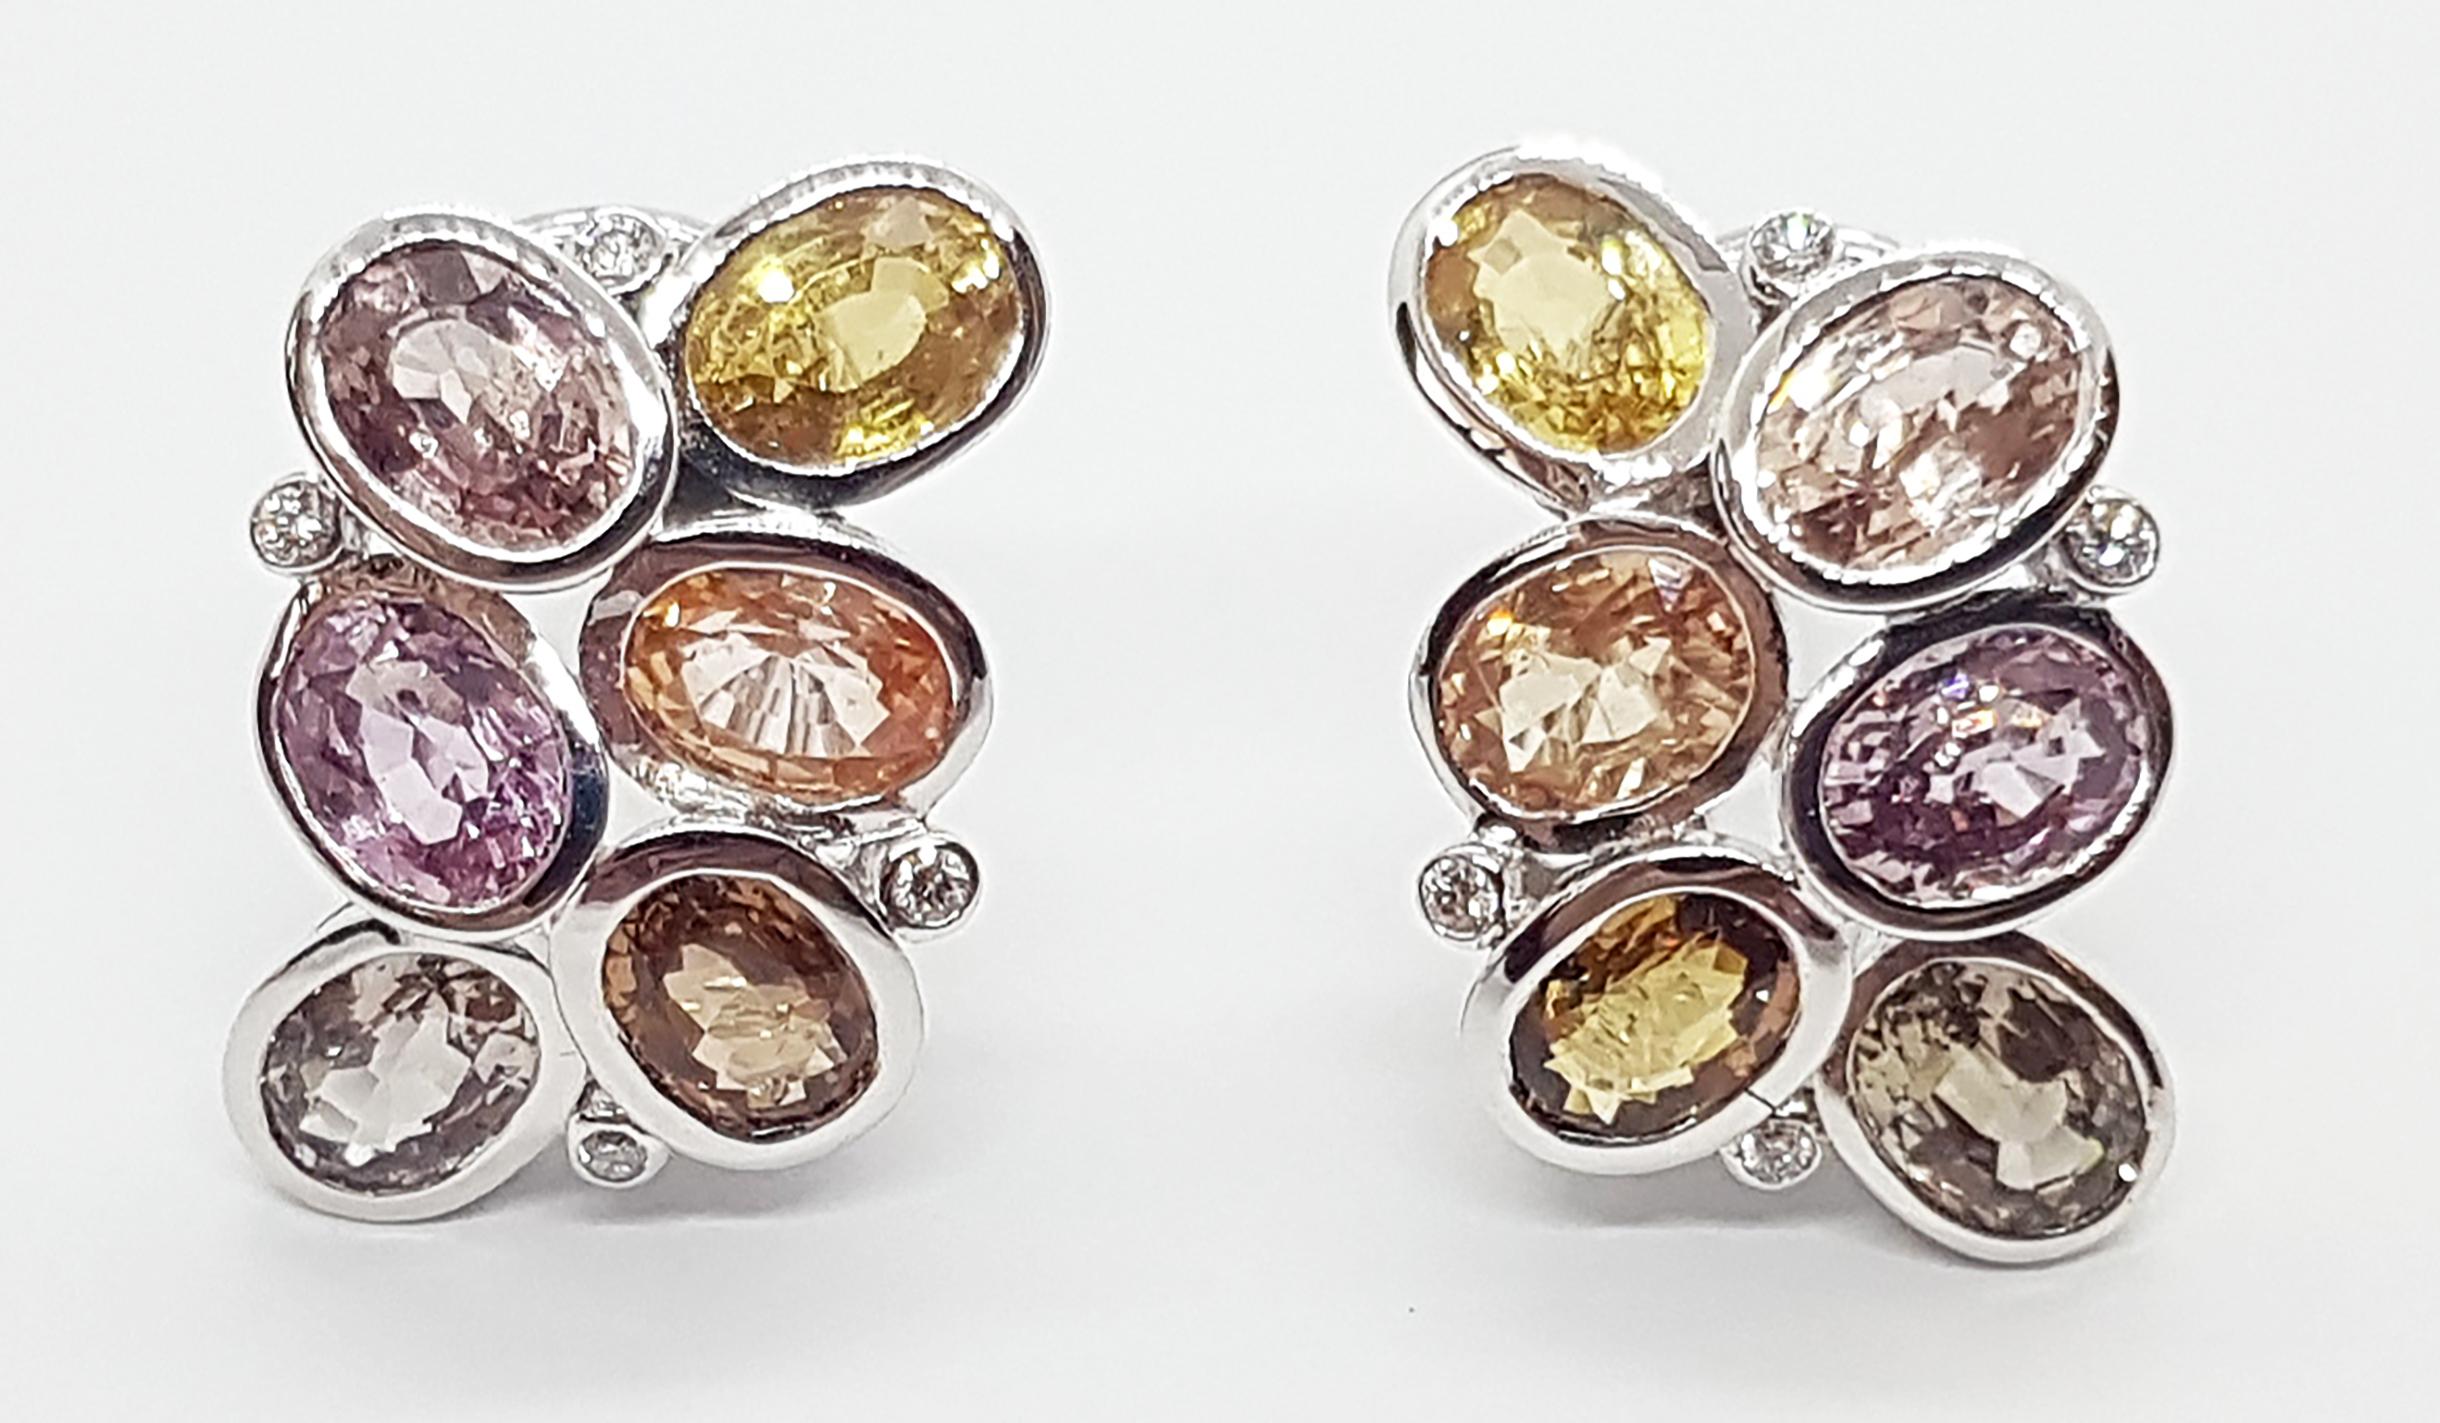 Boucles d'oreilles en or blanc 18 carats avec saphir orange 13.67 carats et diamant 0.12 carat Whiting

Largeur :  1.5 cm 
Longueur :  2.4 cm
Poids total : 12,13 grammes

FONDÉE PAR UN COUPLE PRIMÉ, NUTTAPON (KENNY) & SHAR-LINN, KAVANT & SHARART EST